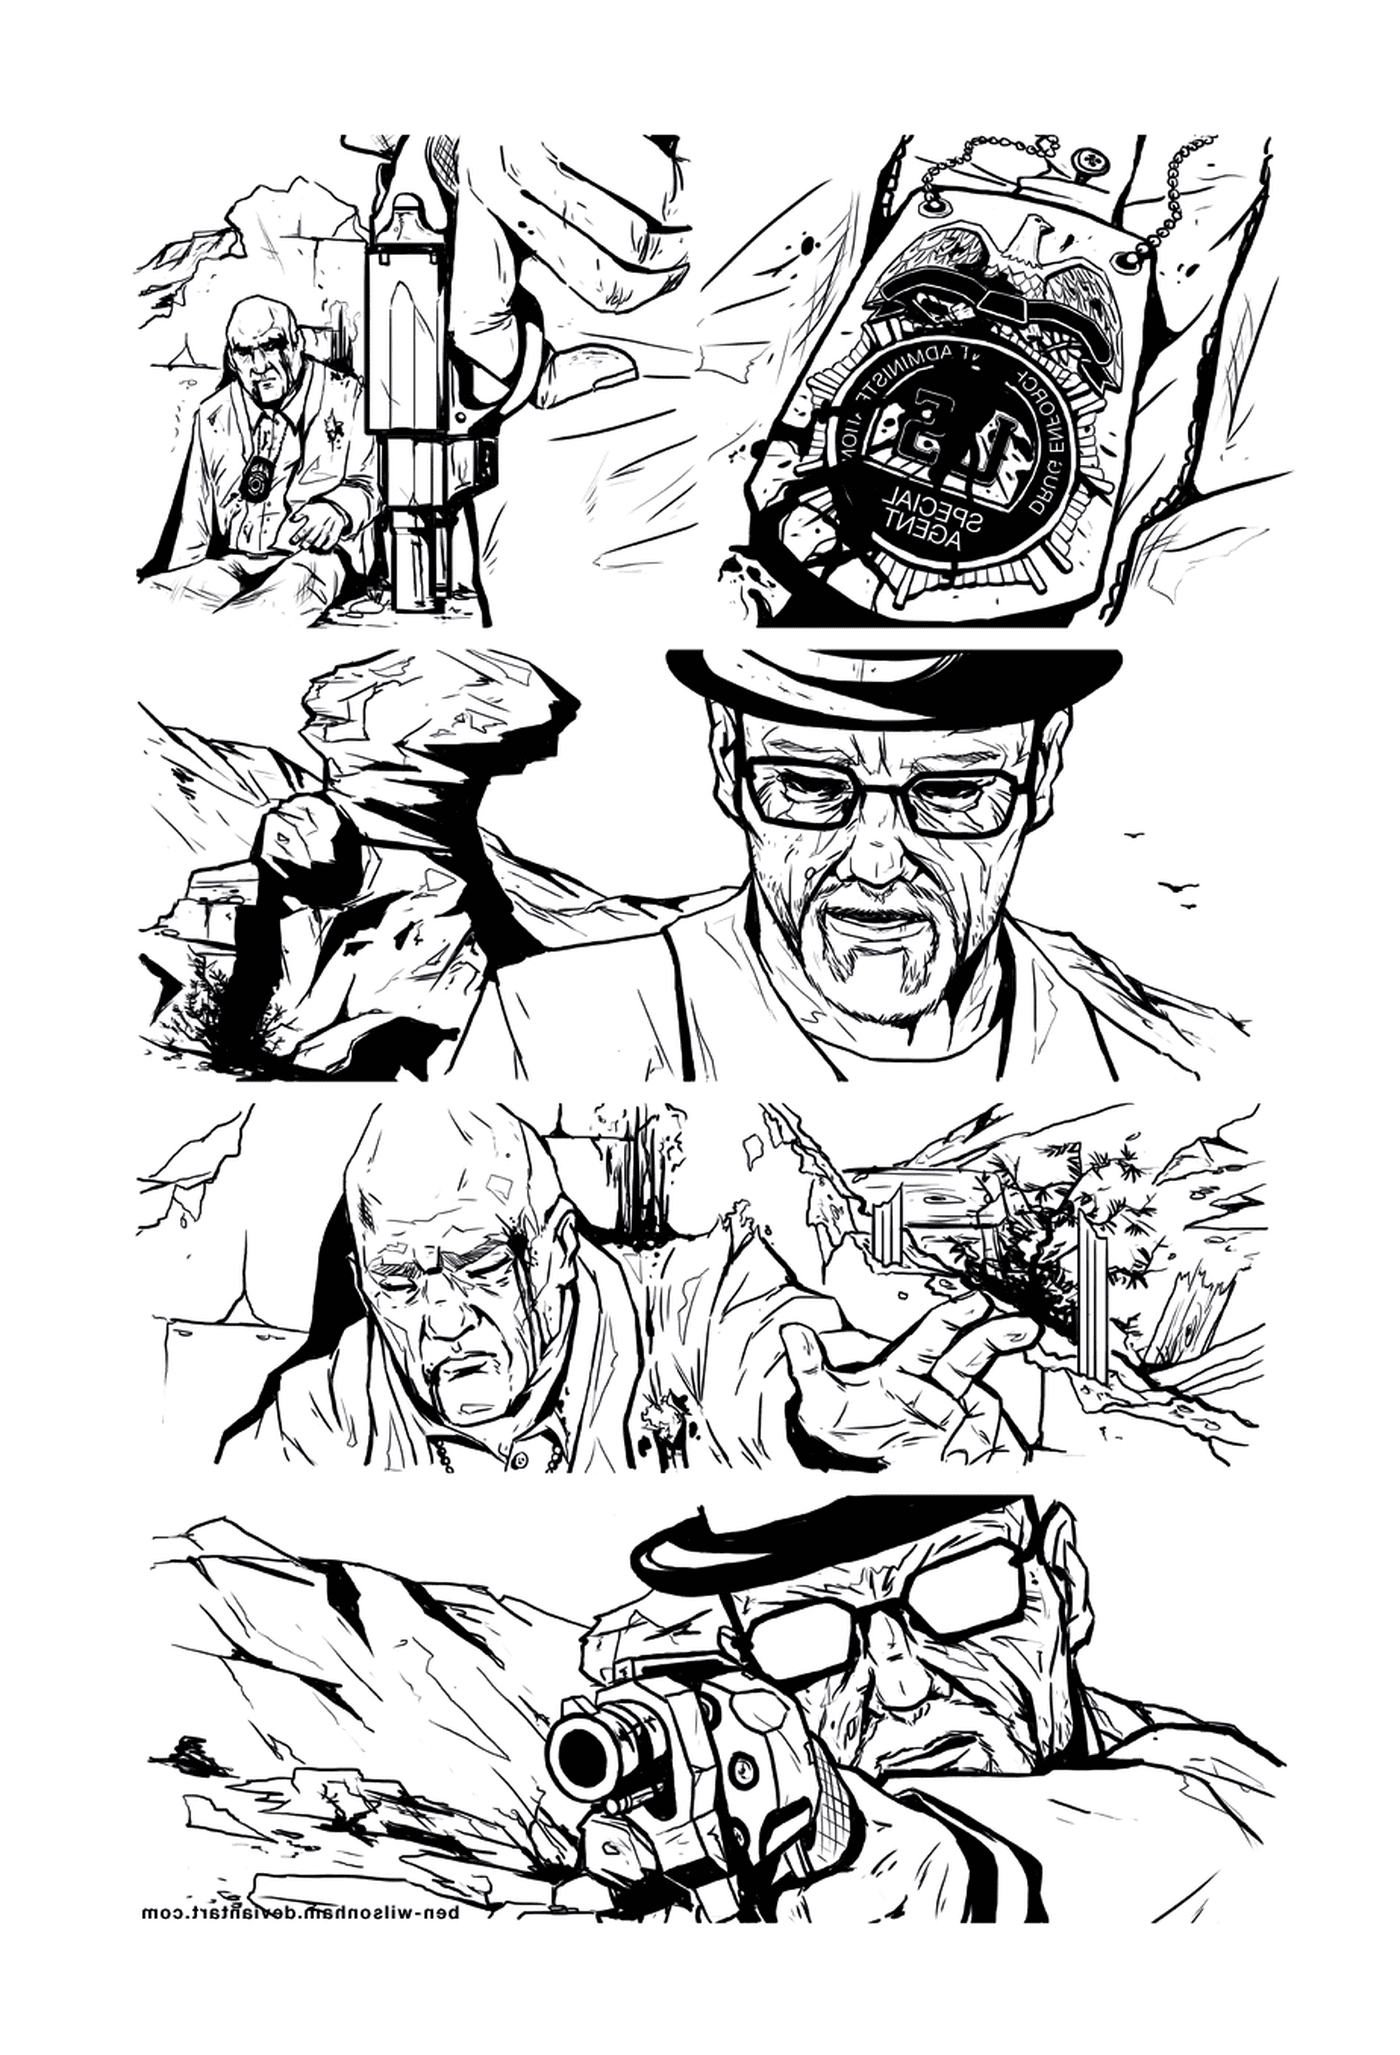   Une série de dessins en noir et blanc d'un homme 